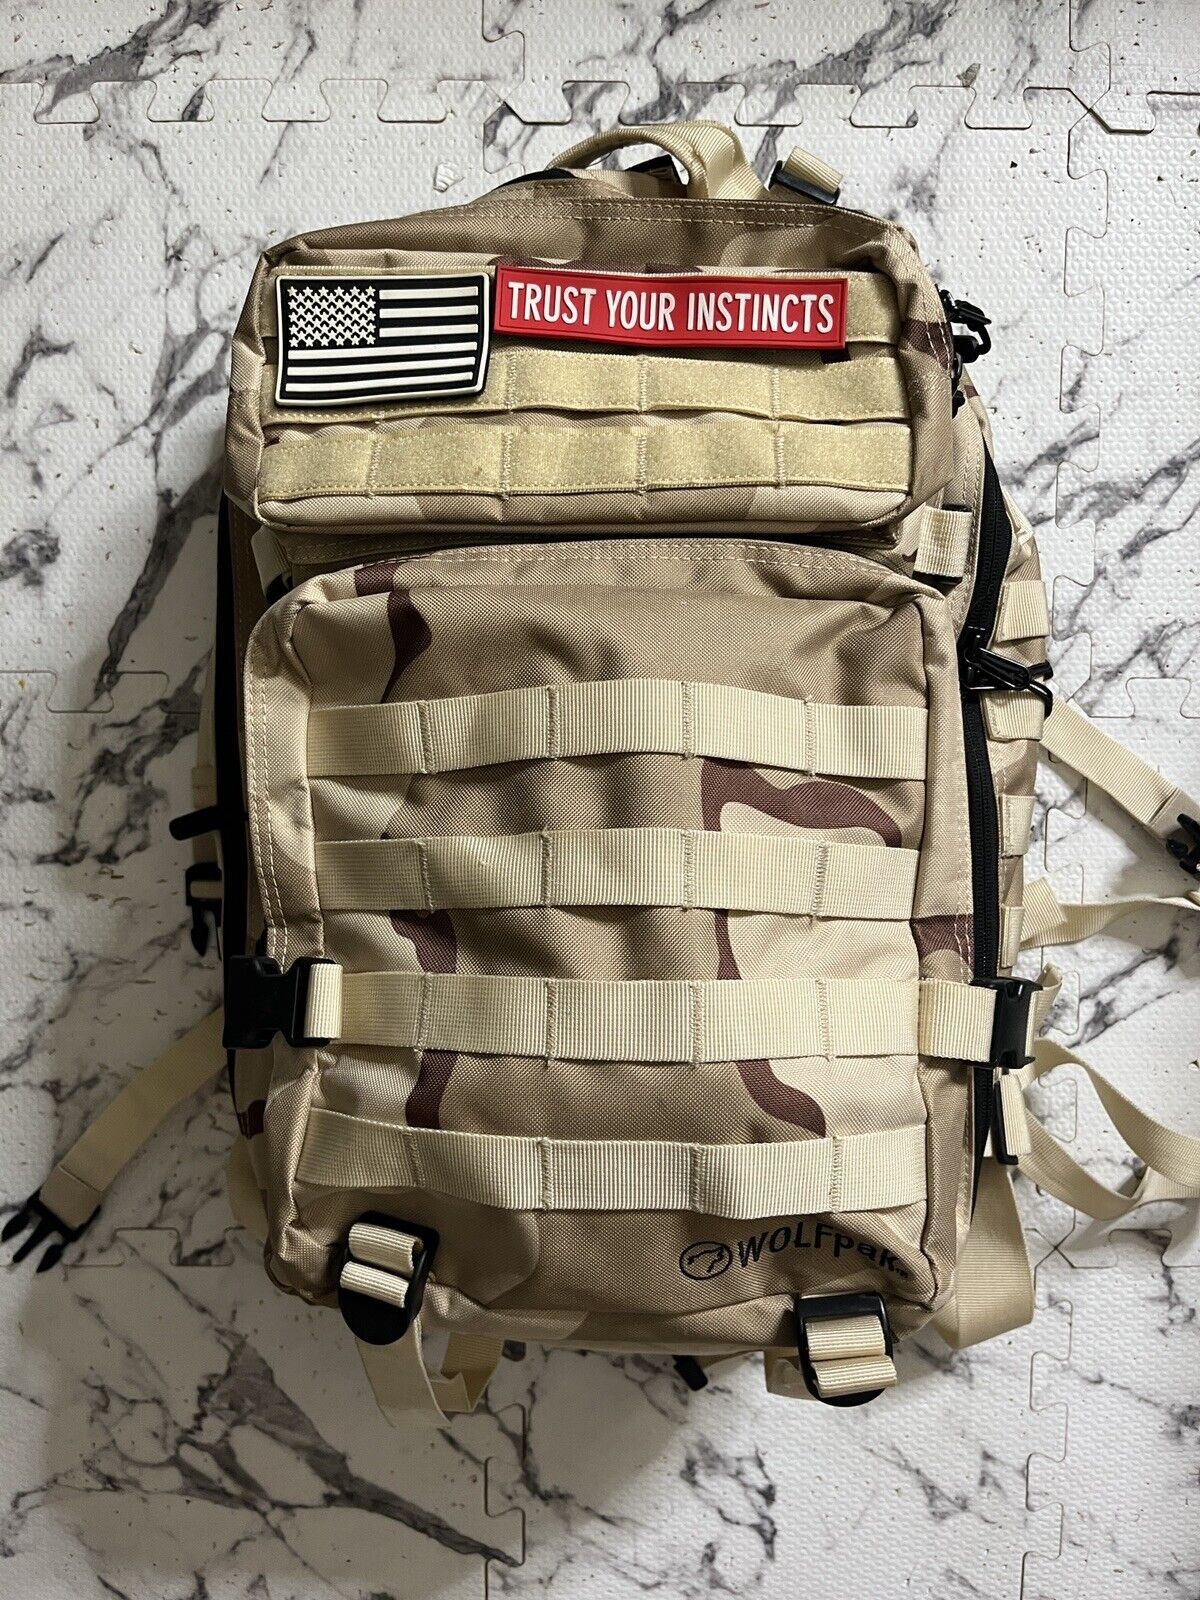 wolfpak backpack 45L Liter Desert Camouflage (rare)